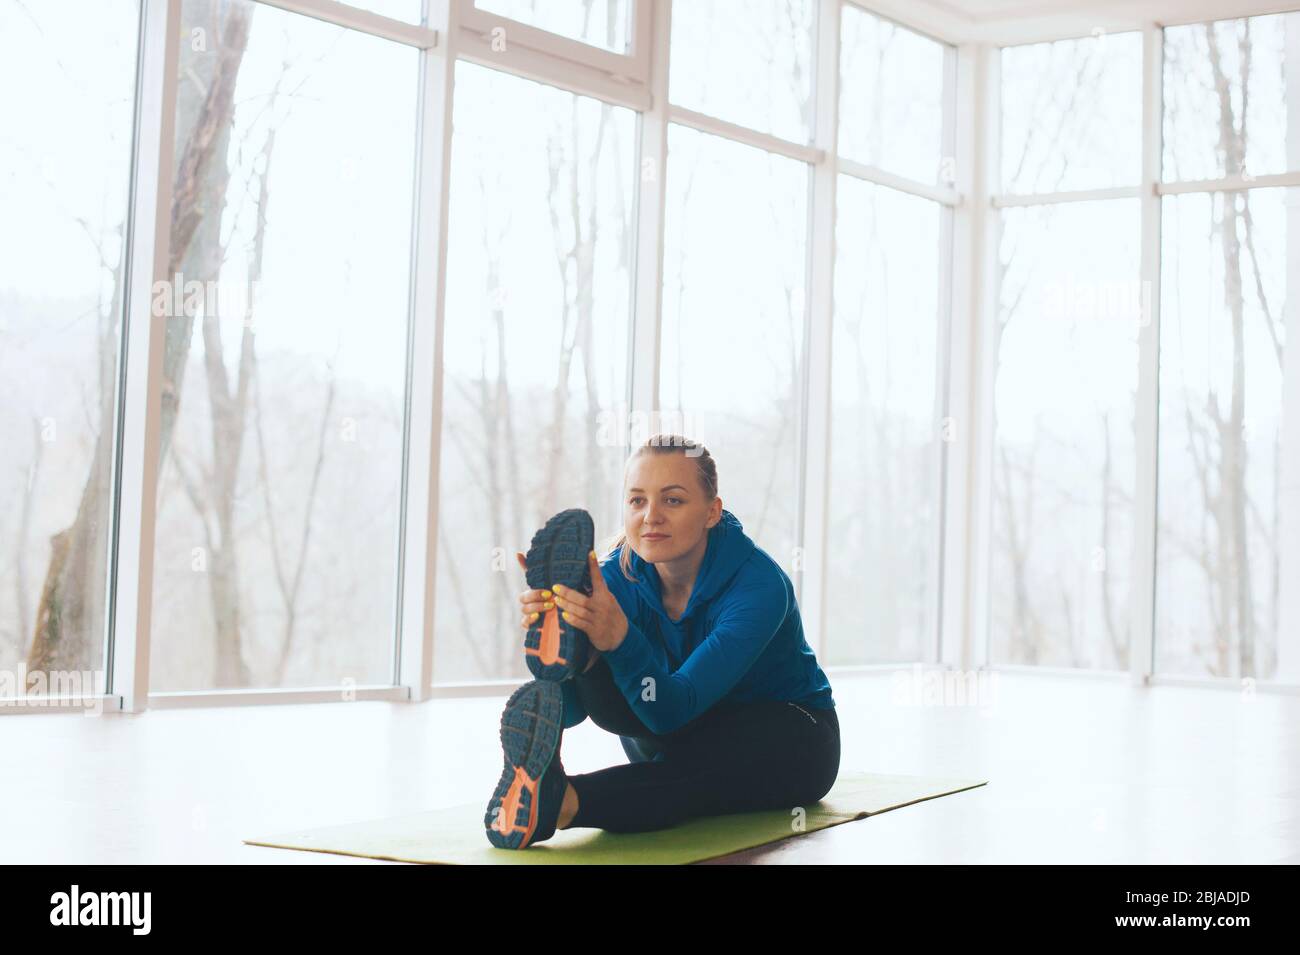 Konzentrierte Frau tut etwas Stretching auf dem Boden in einem Raum voller Licht und Fenster. Stockfoto